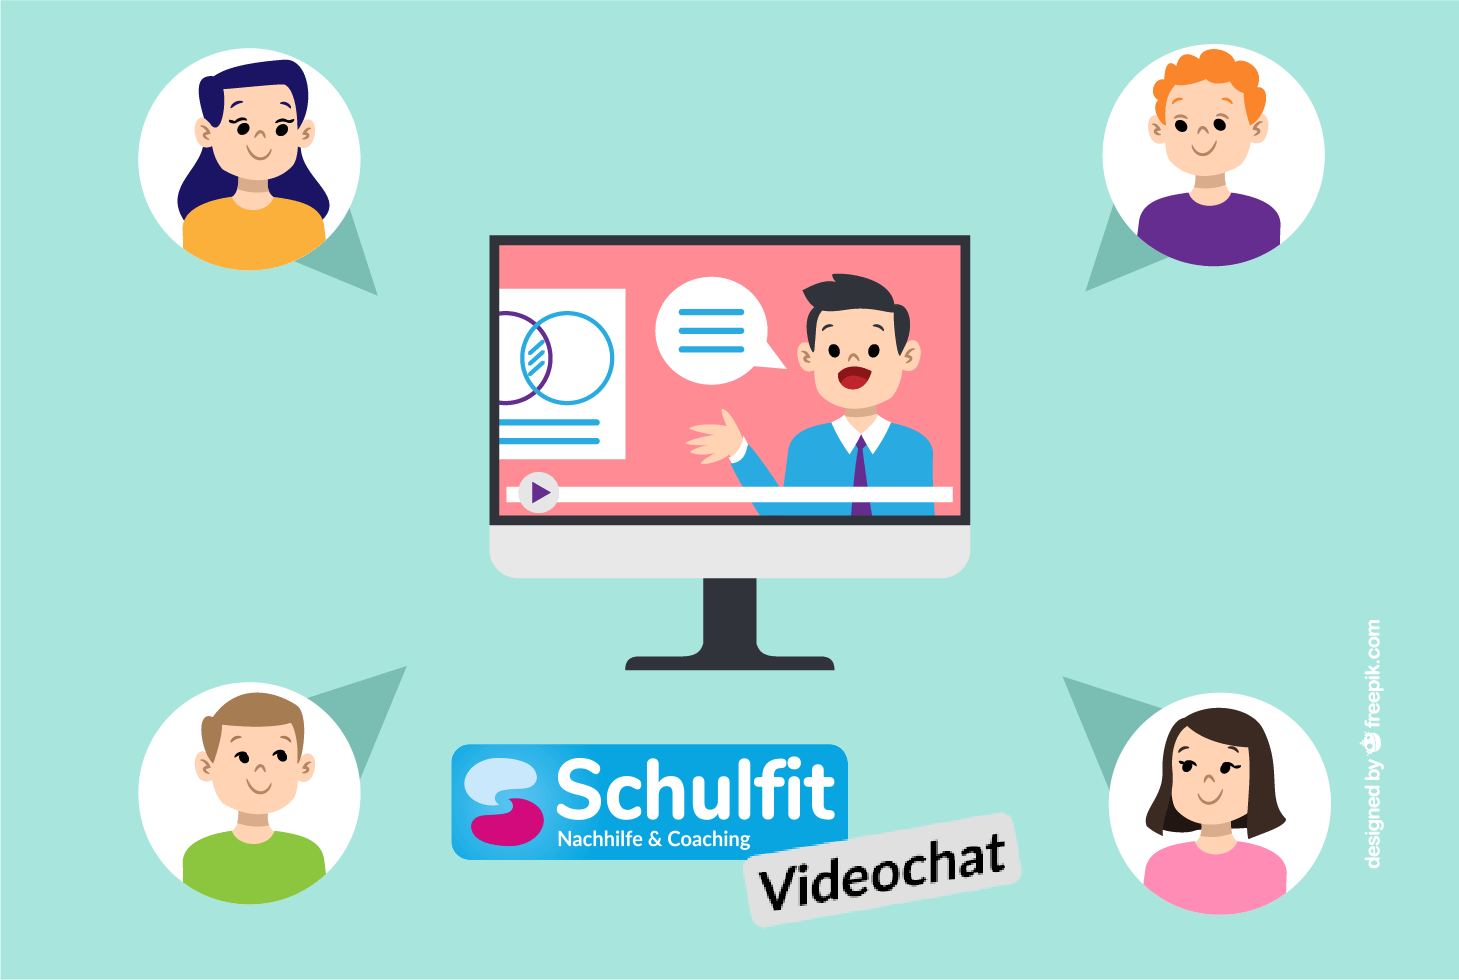 Schulfit Nachhilfe per Videochat mit Teams, Zoom, Skype & Co. ermöglicht flexibles Lernen zuhause und fördert die digitale Medienkompetenz.